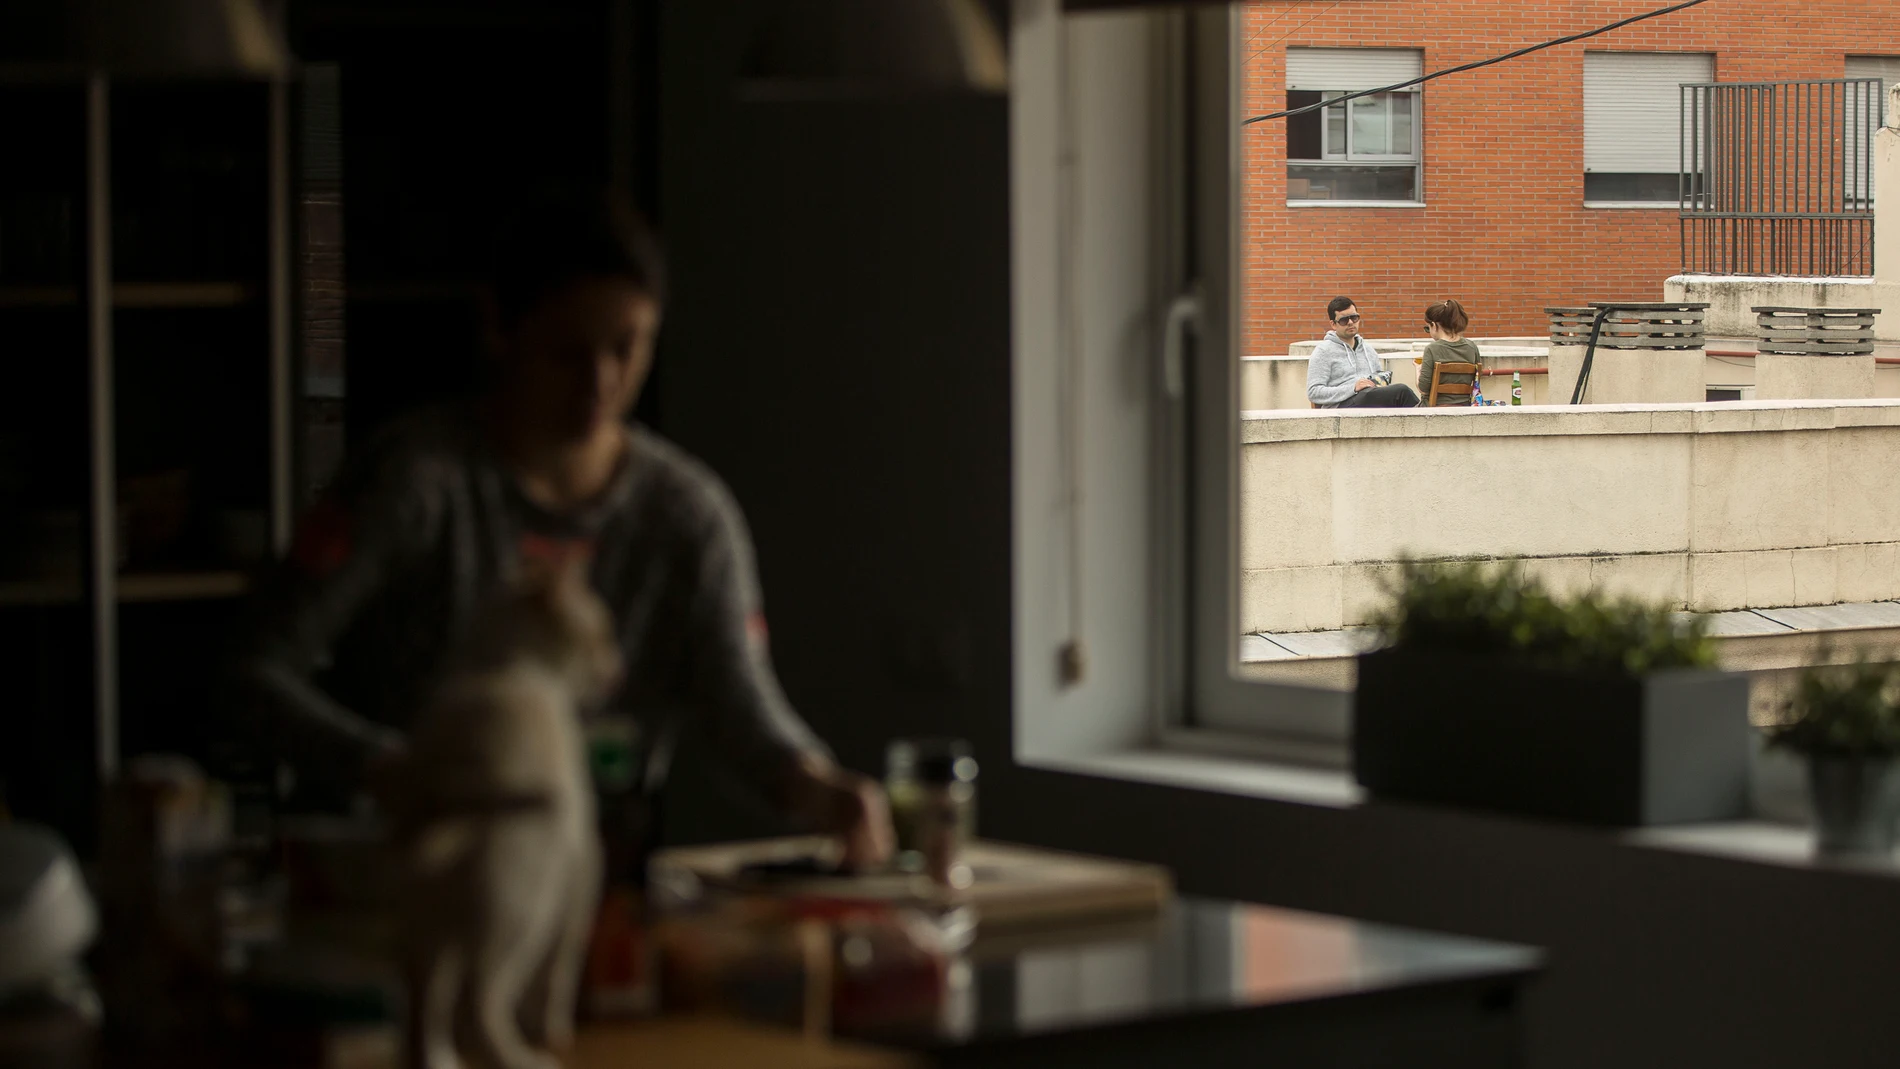 Una pareja toma el aperitivo en la azotea de su edificio durante el estado de alarma por la pandemia del coronavirus.